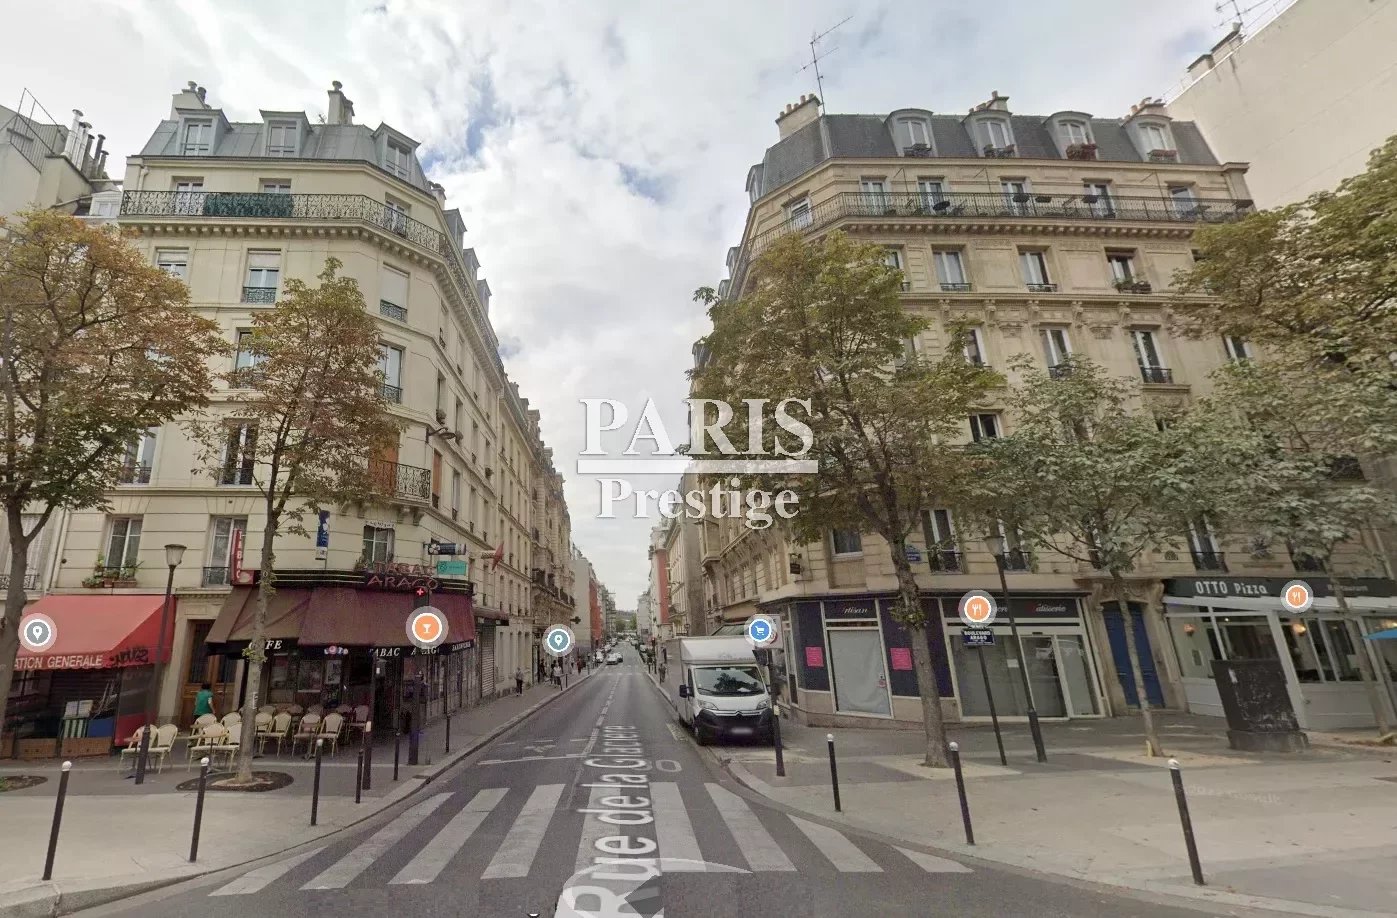 Sale Apartment - Paris 13th (Paris 13ème) Croulebarbe